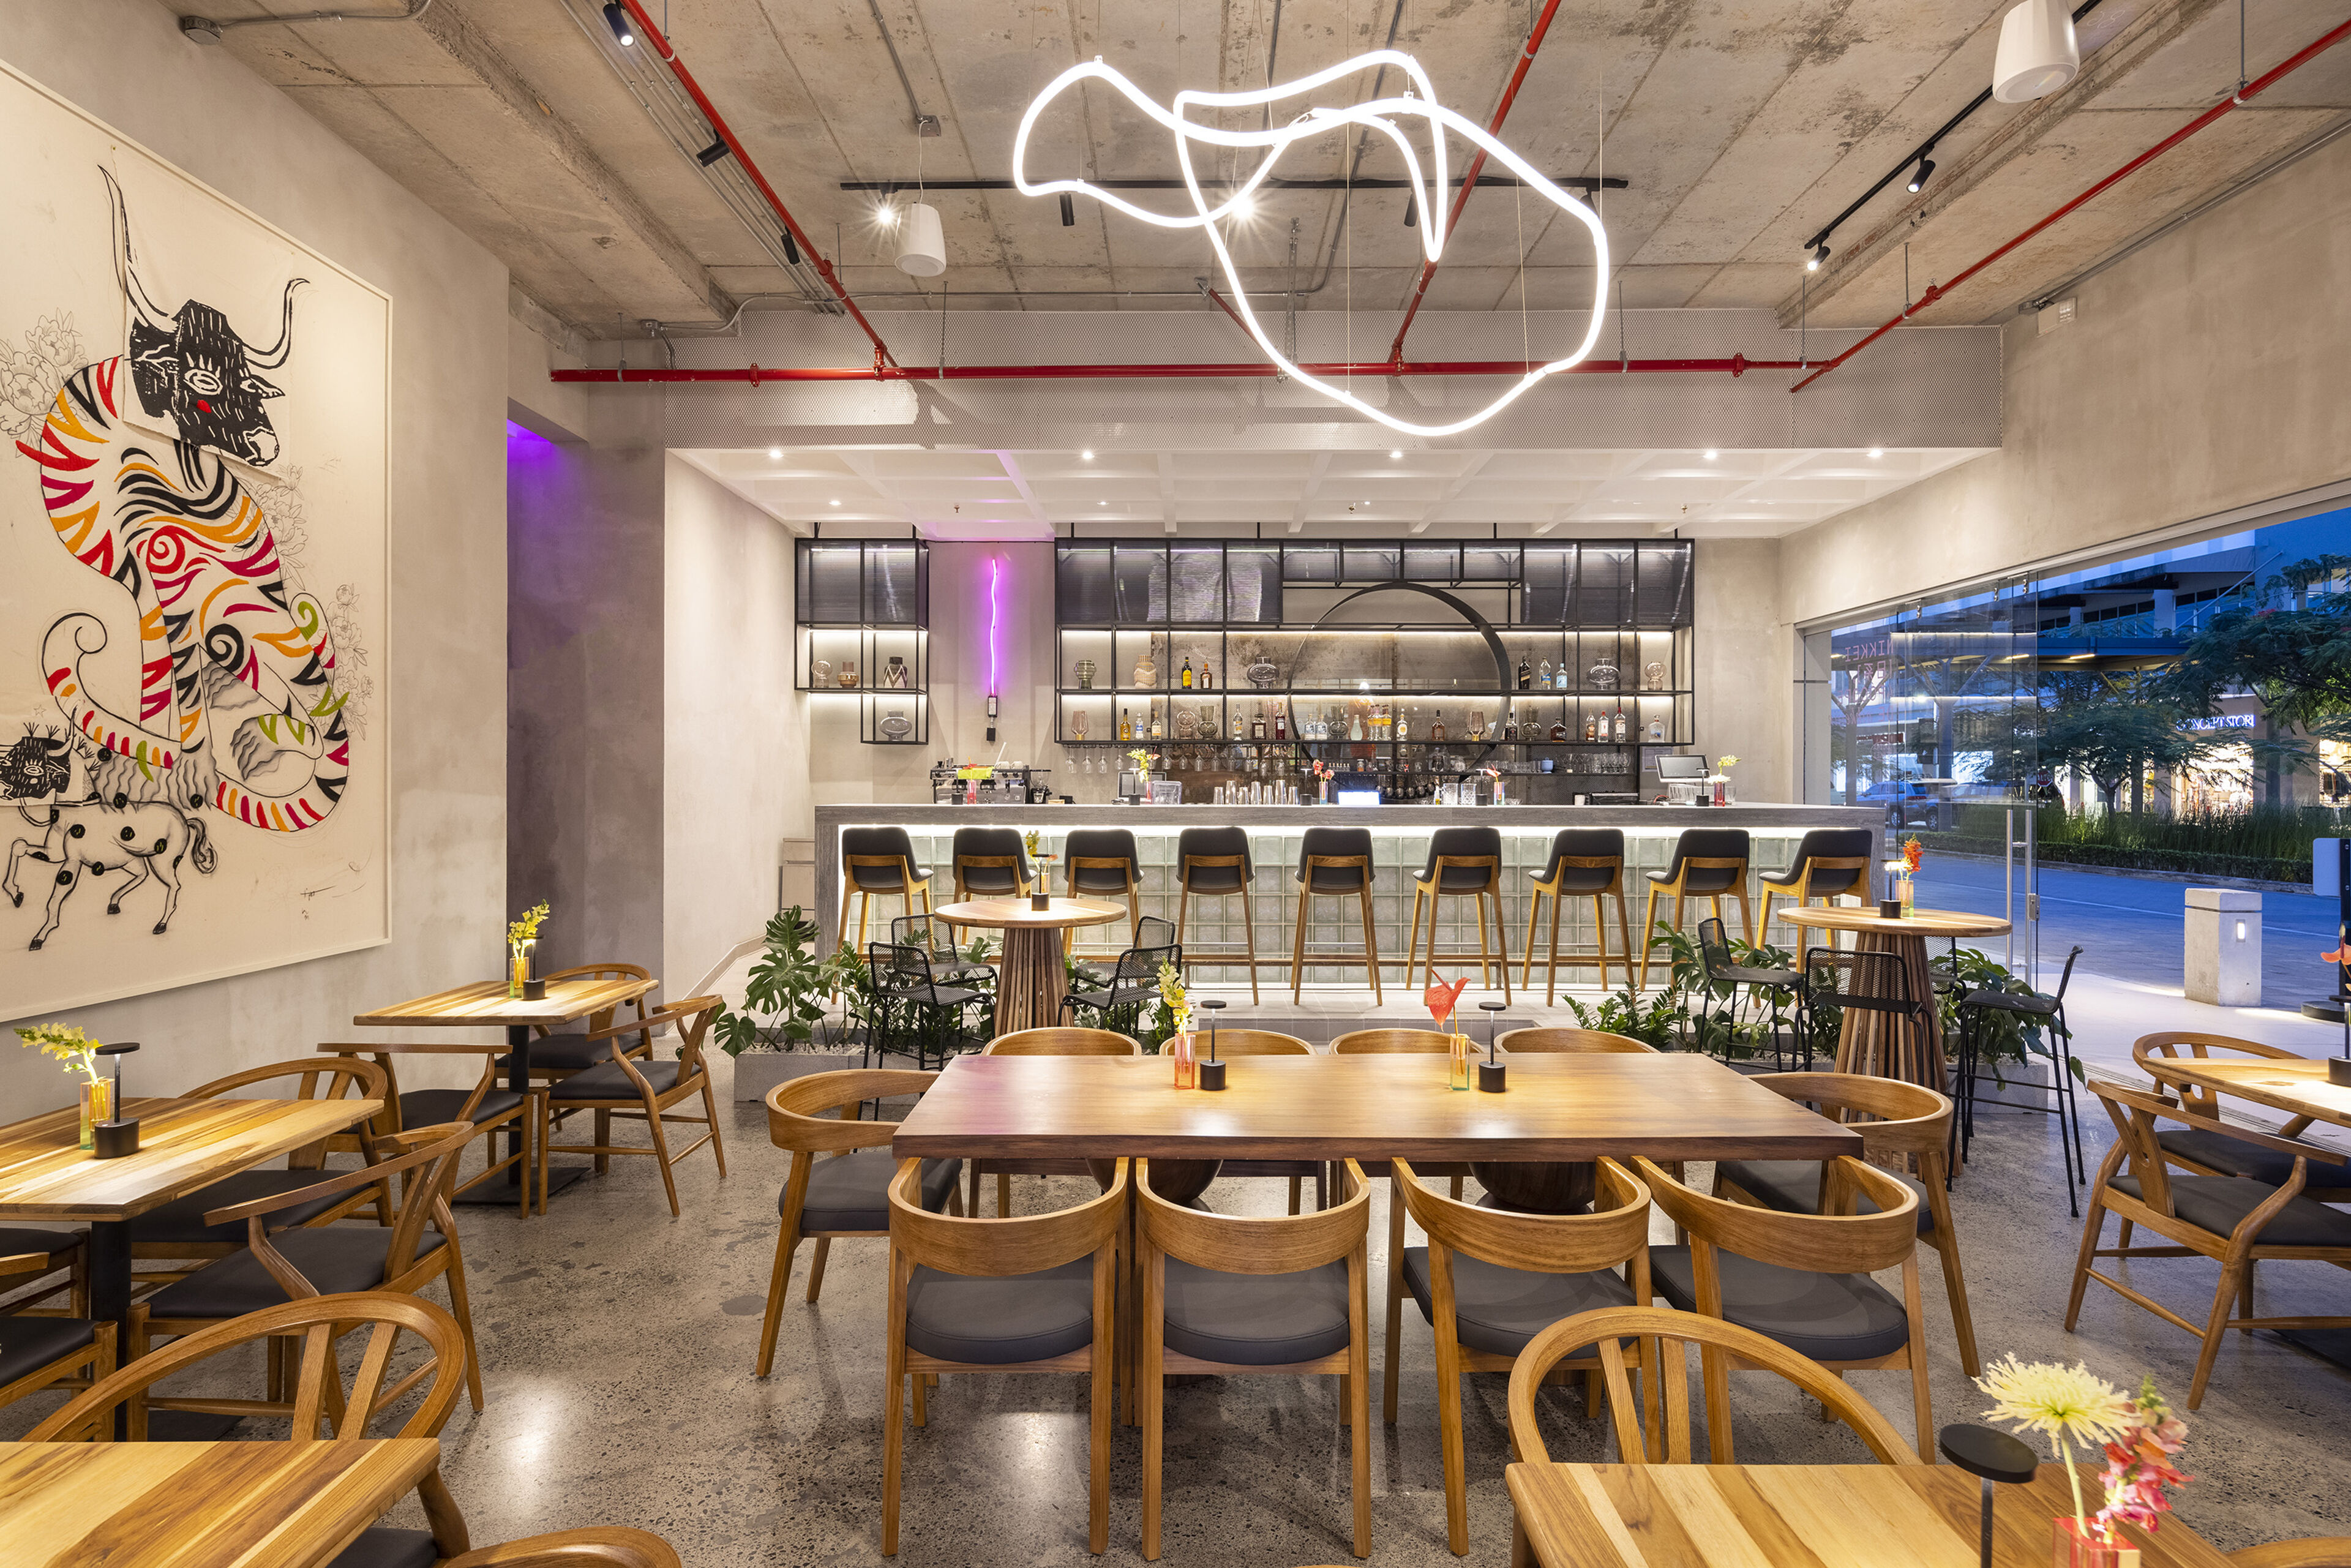 Un café moderno con decoración artística de paredes, iluminación ecléctica y una zona de bar con estilo.